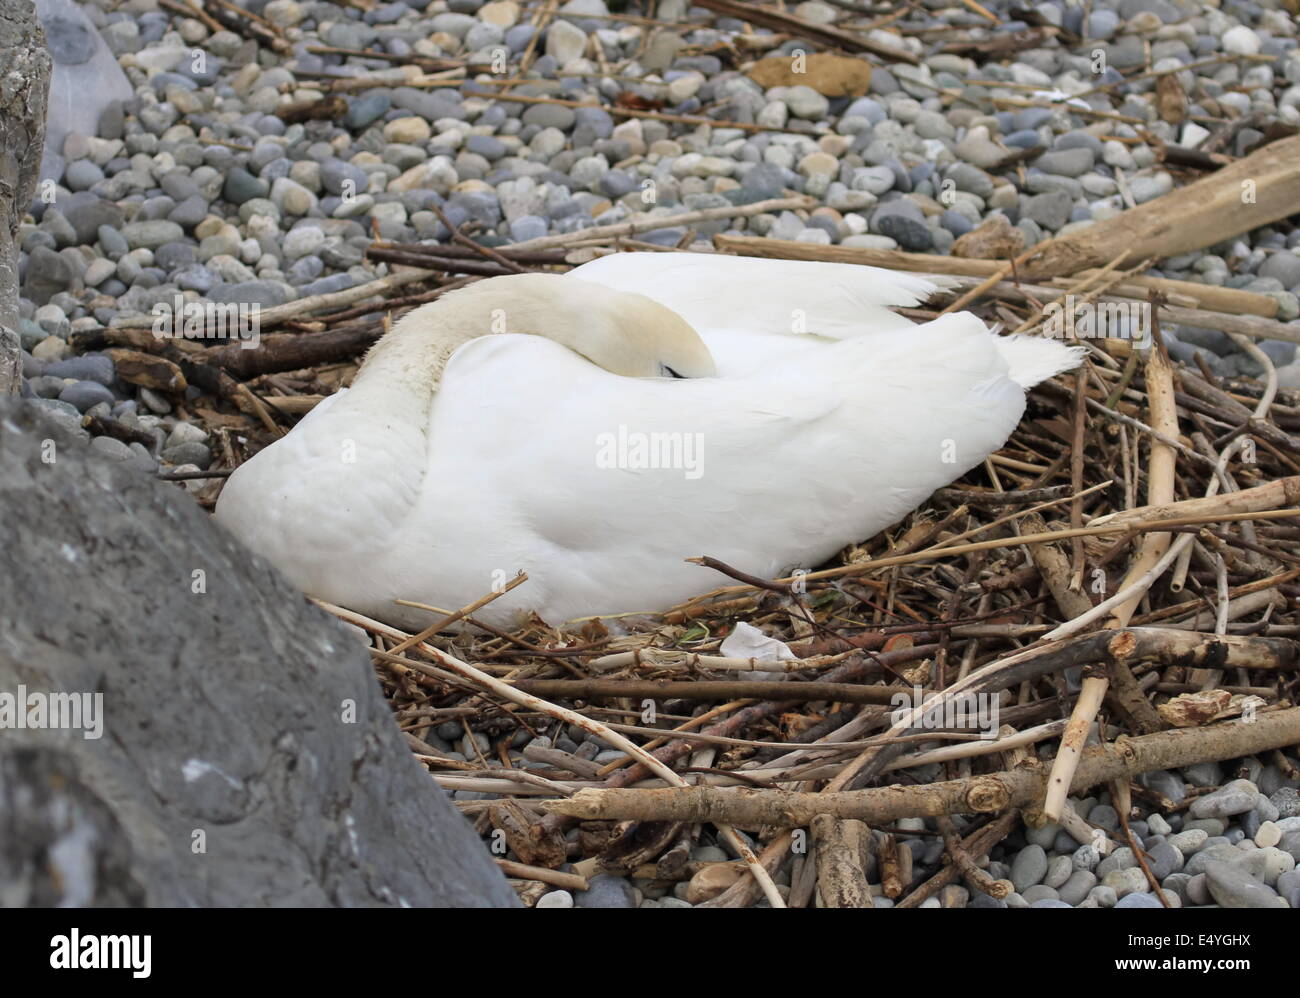 Swan nesting Stock Photo